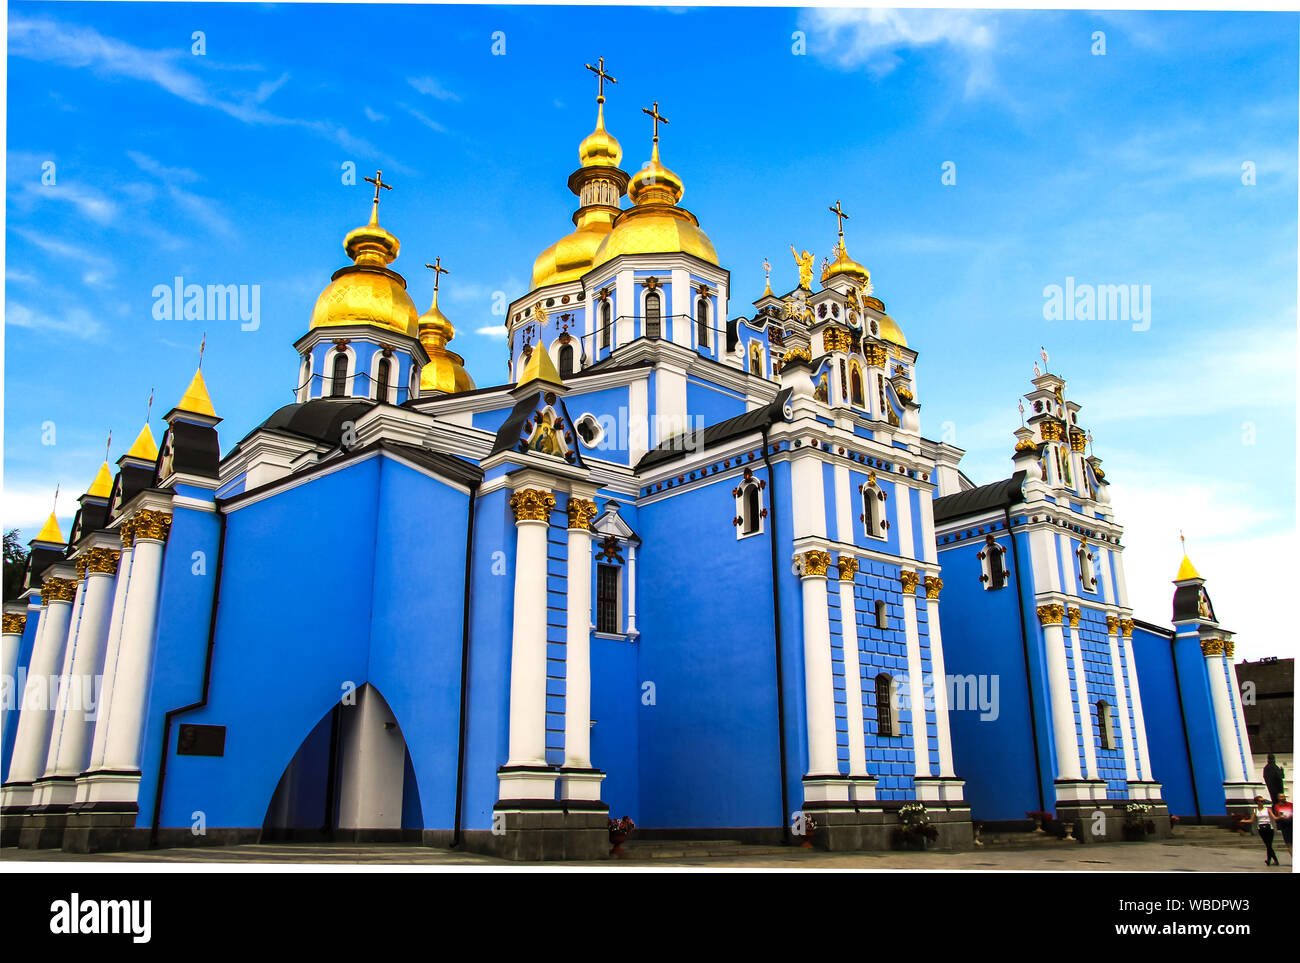 Die orthodoxe Kirche der Ukraine. Schönen St. Michael s Golden gewölbte männlichen Kloster, die älteste christliche Kirche der Ukraine, die Ukrainische Orthodoxe Kirche Stockfoto